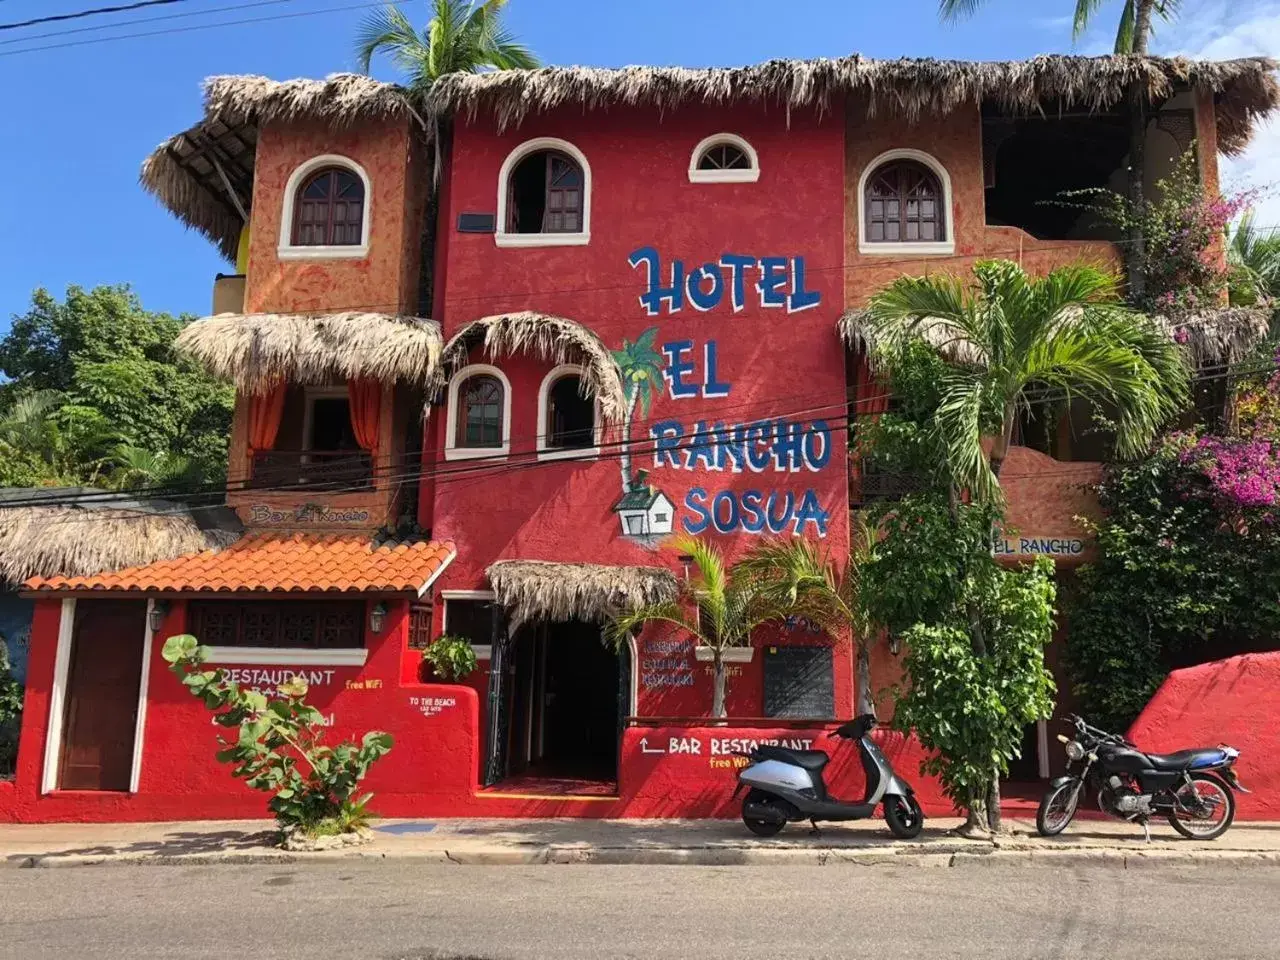 Property building, Facade/Entrance in Hotel El Rancho Sosua